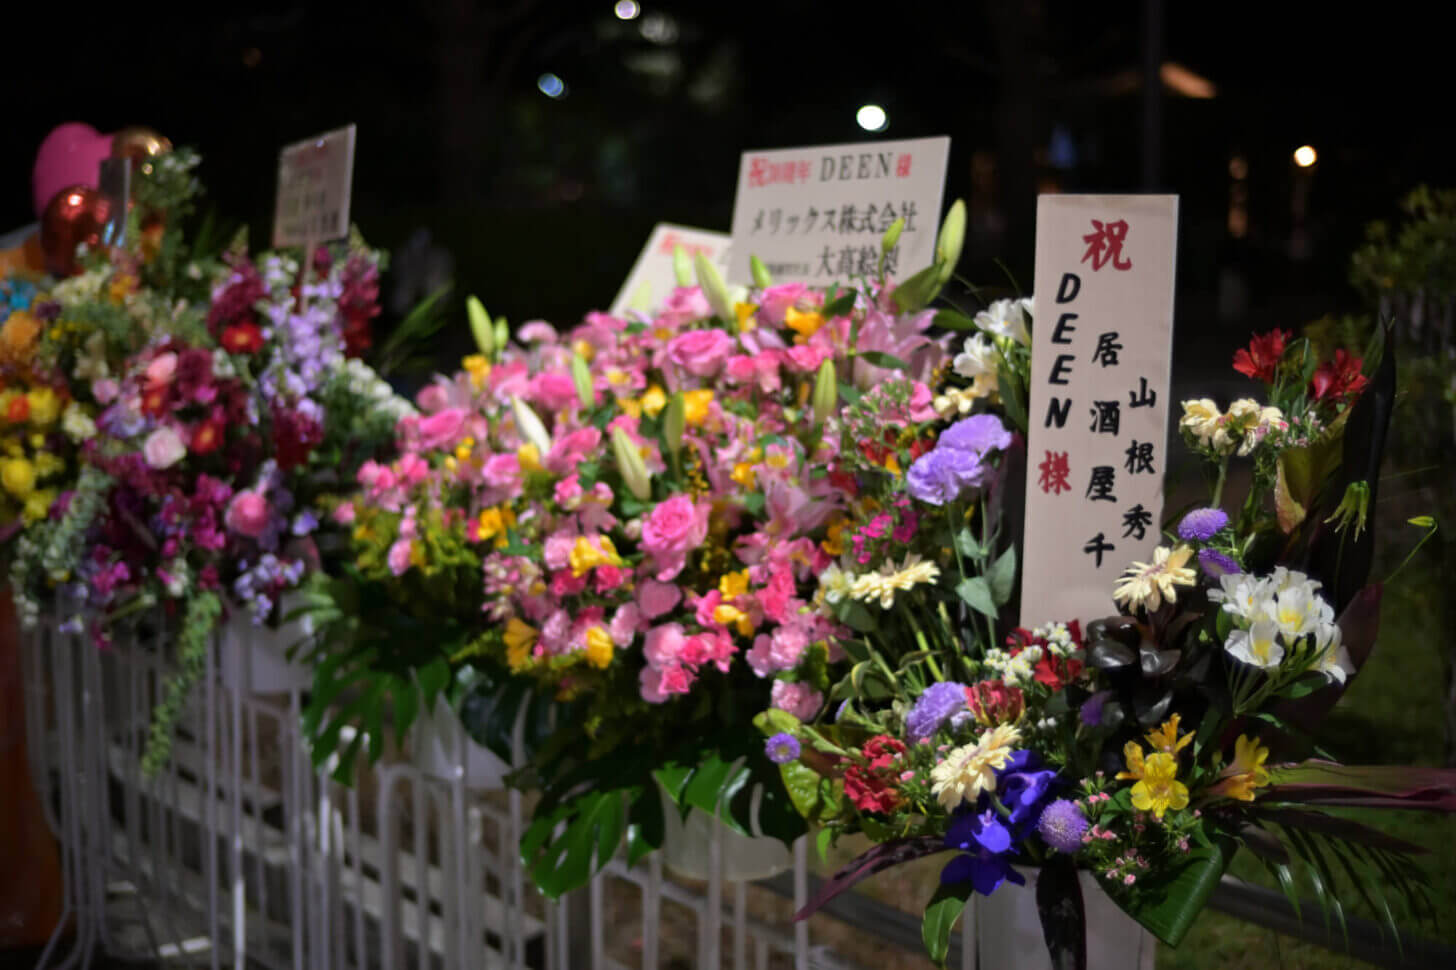 DEEN30周年記念ライヴ当日の日本武道館